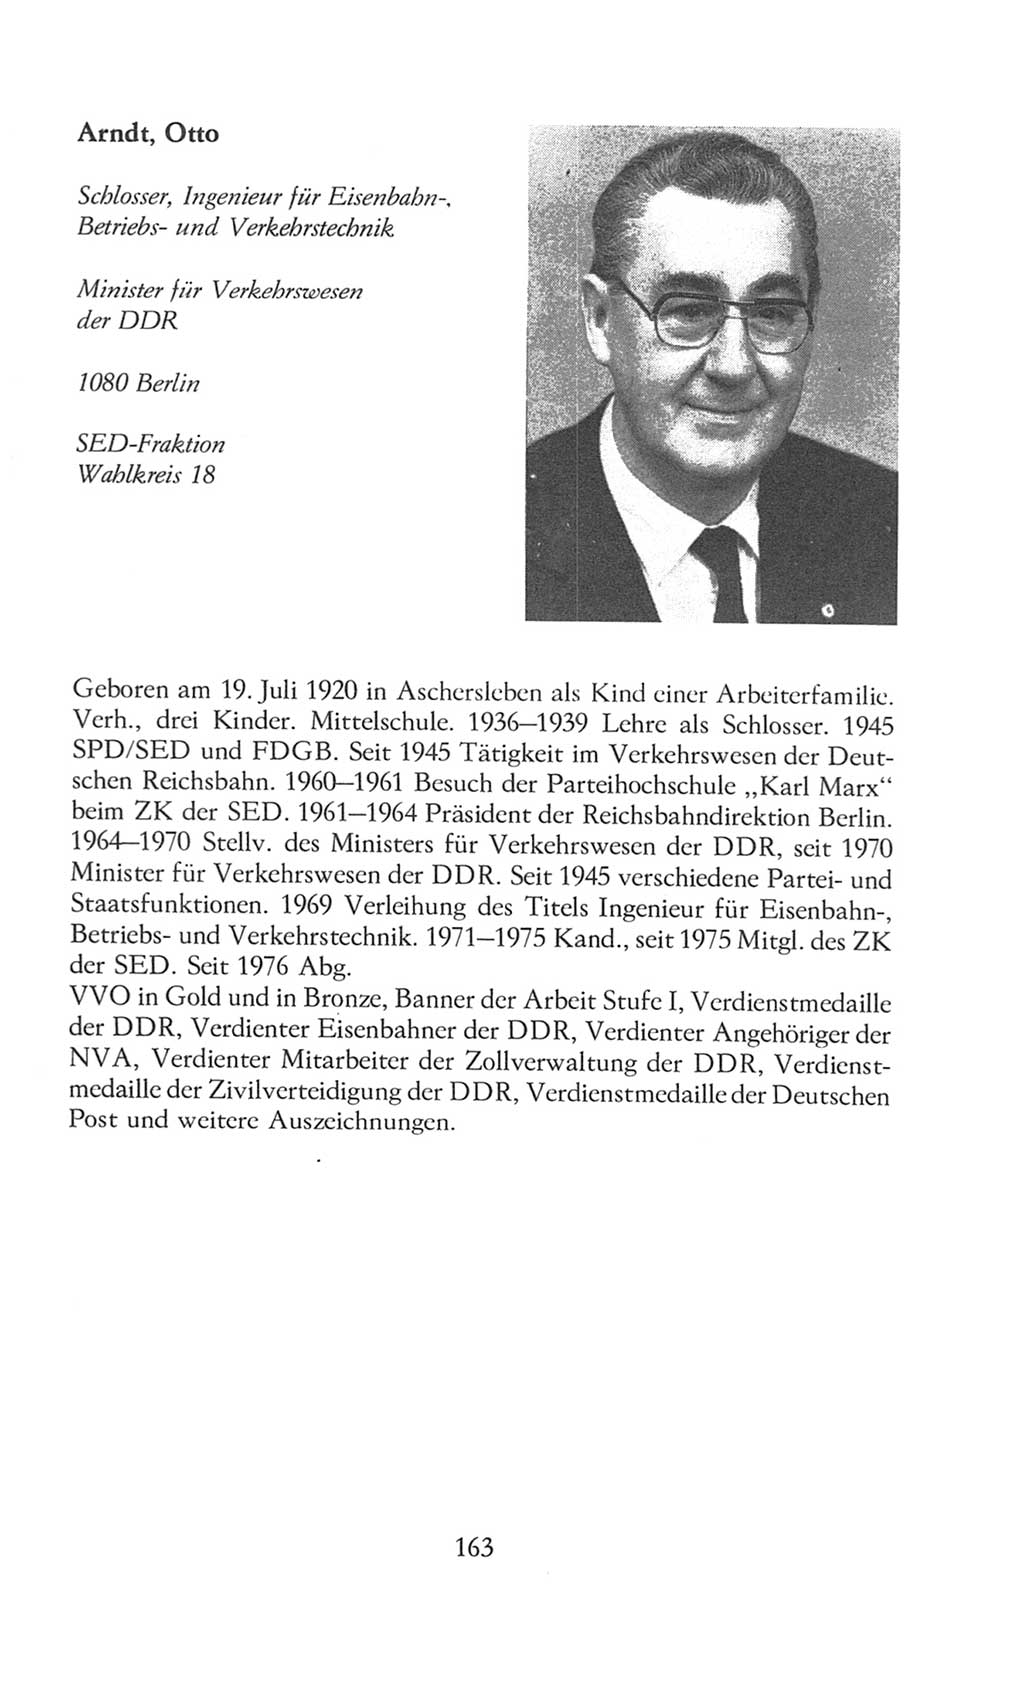 Volkskammer (VK) der Deutschen Demokratischen Republik (DDR), 8. Wahlperiode 1981-1986, Seite 163 (VK. DDR 8. WP. 1981-1986, S. 163)